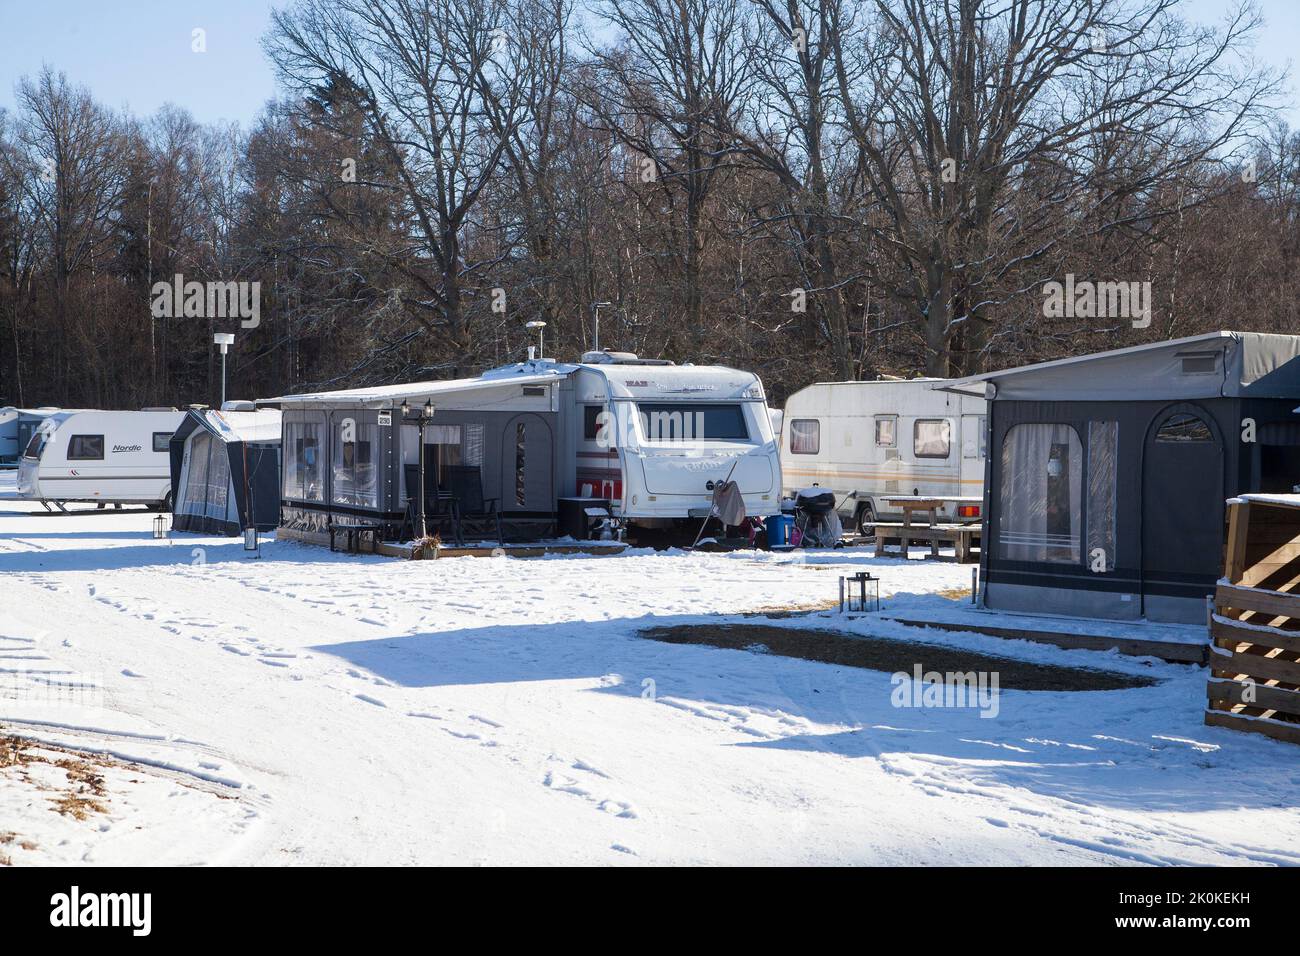 TUTTO L'ANNO CAMPING in caravan in una giornata invernale innevata Foto Stock